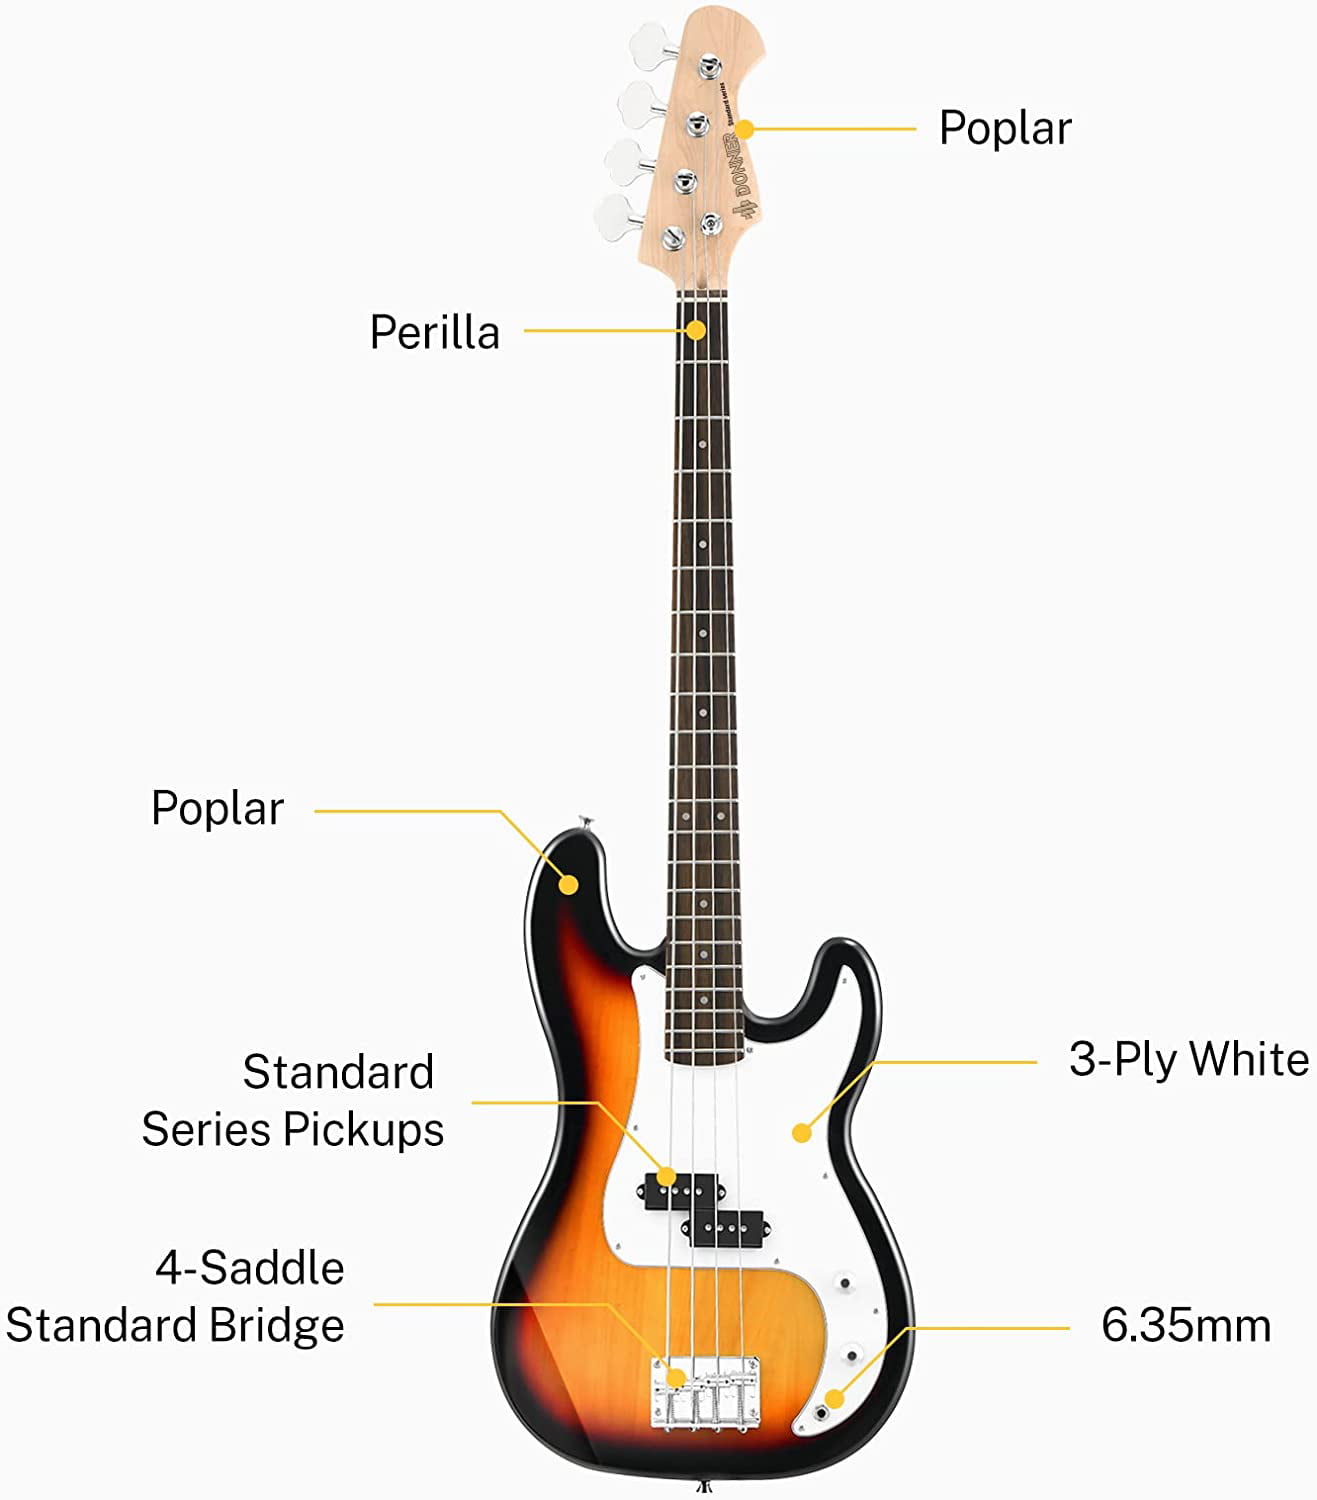 Donner DPB-510D Guitare basse électrique 4 cordes PB pour débutant